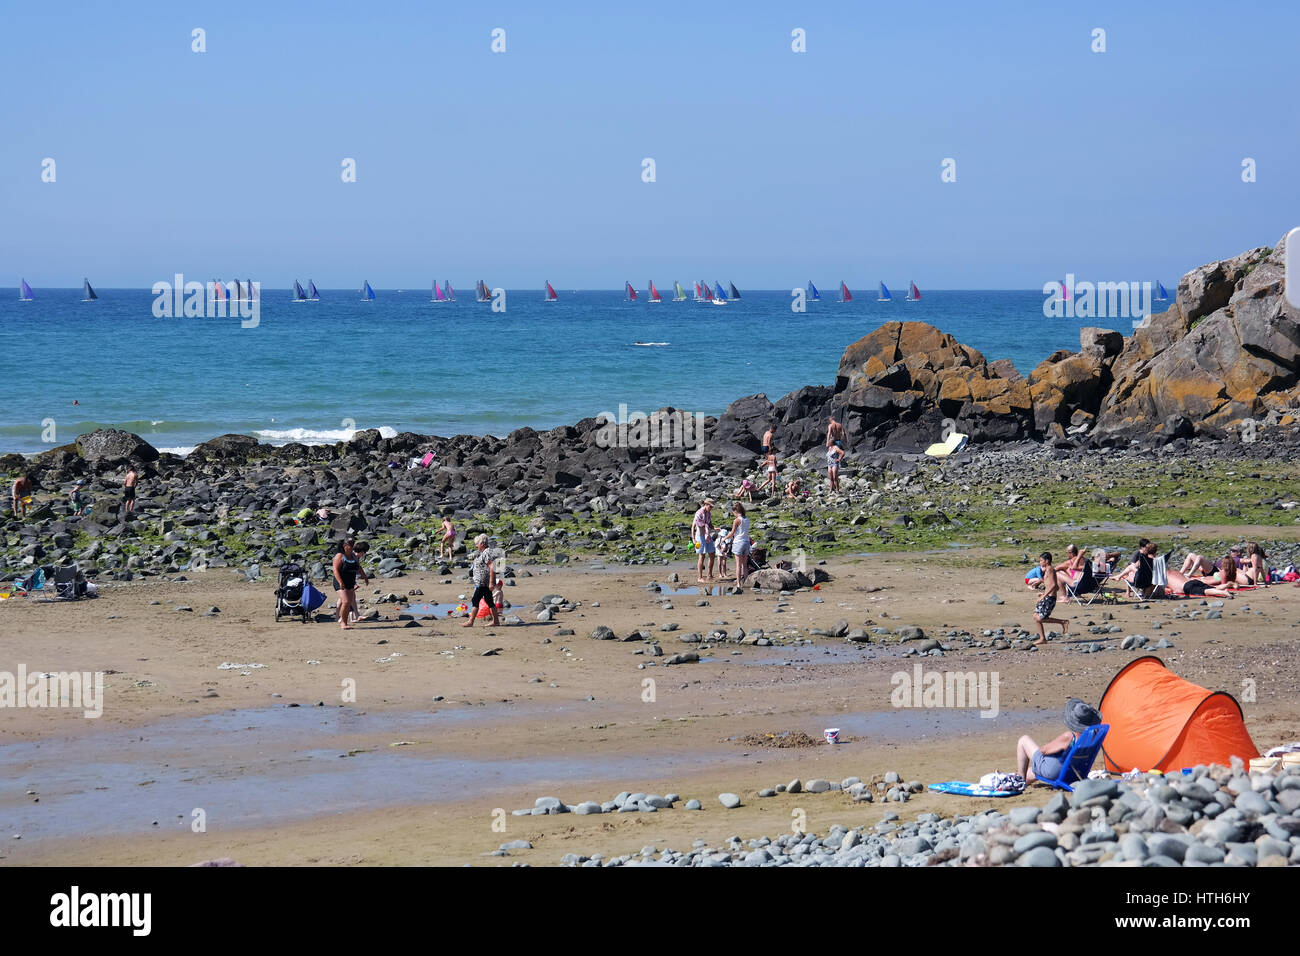 Gran roca en una playa de arena durante la marea baja, en Bretaña, Francia Foto de stock